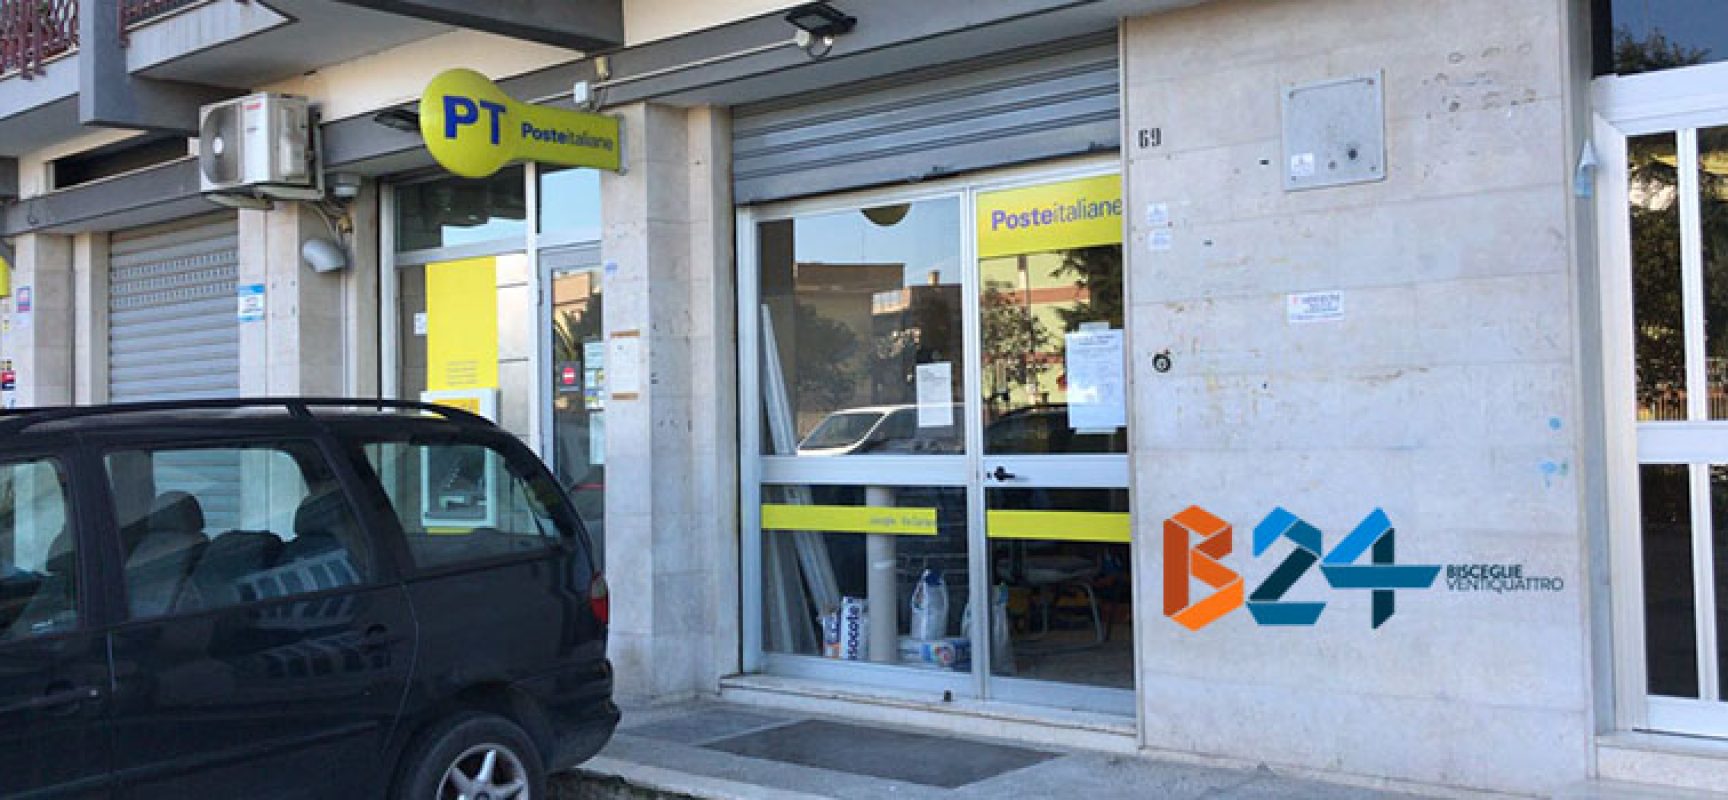 Ufficio postale di via Carrara Reddito chiuso per tutto il mese di marzo